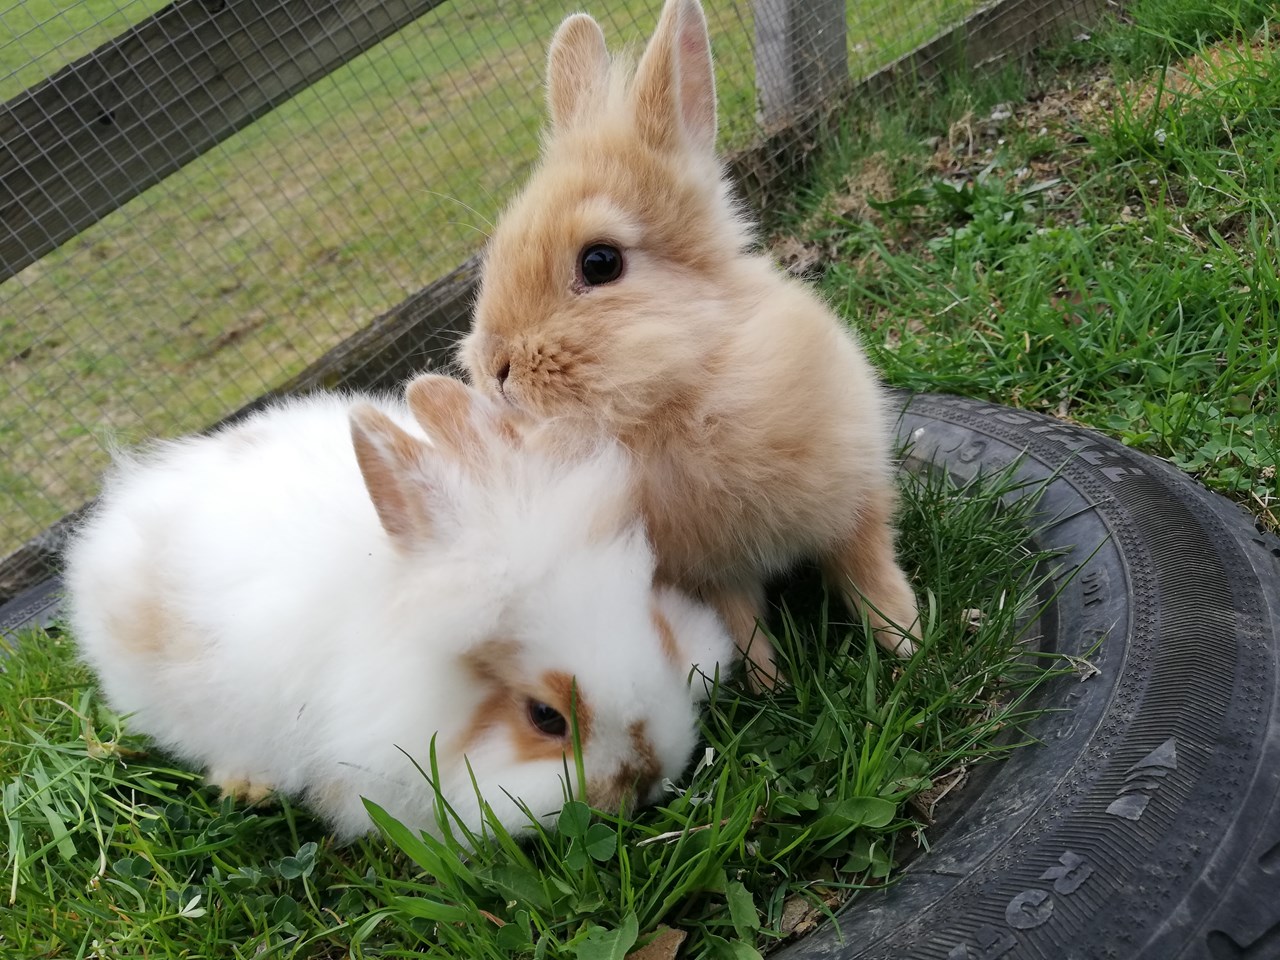 Kindererlebnis-Bauernhof Perhofer Our animals Dwarf rabbits